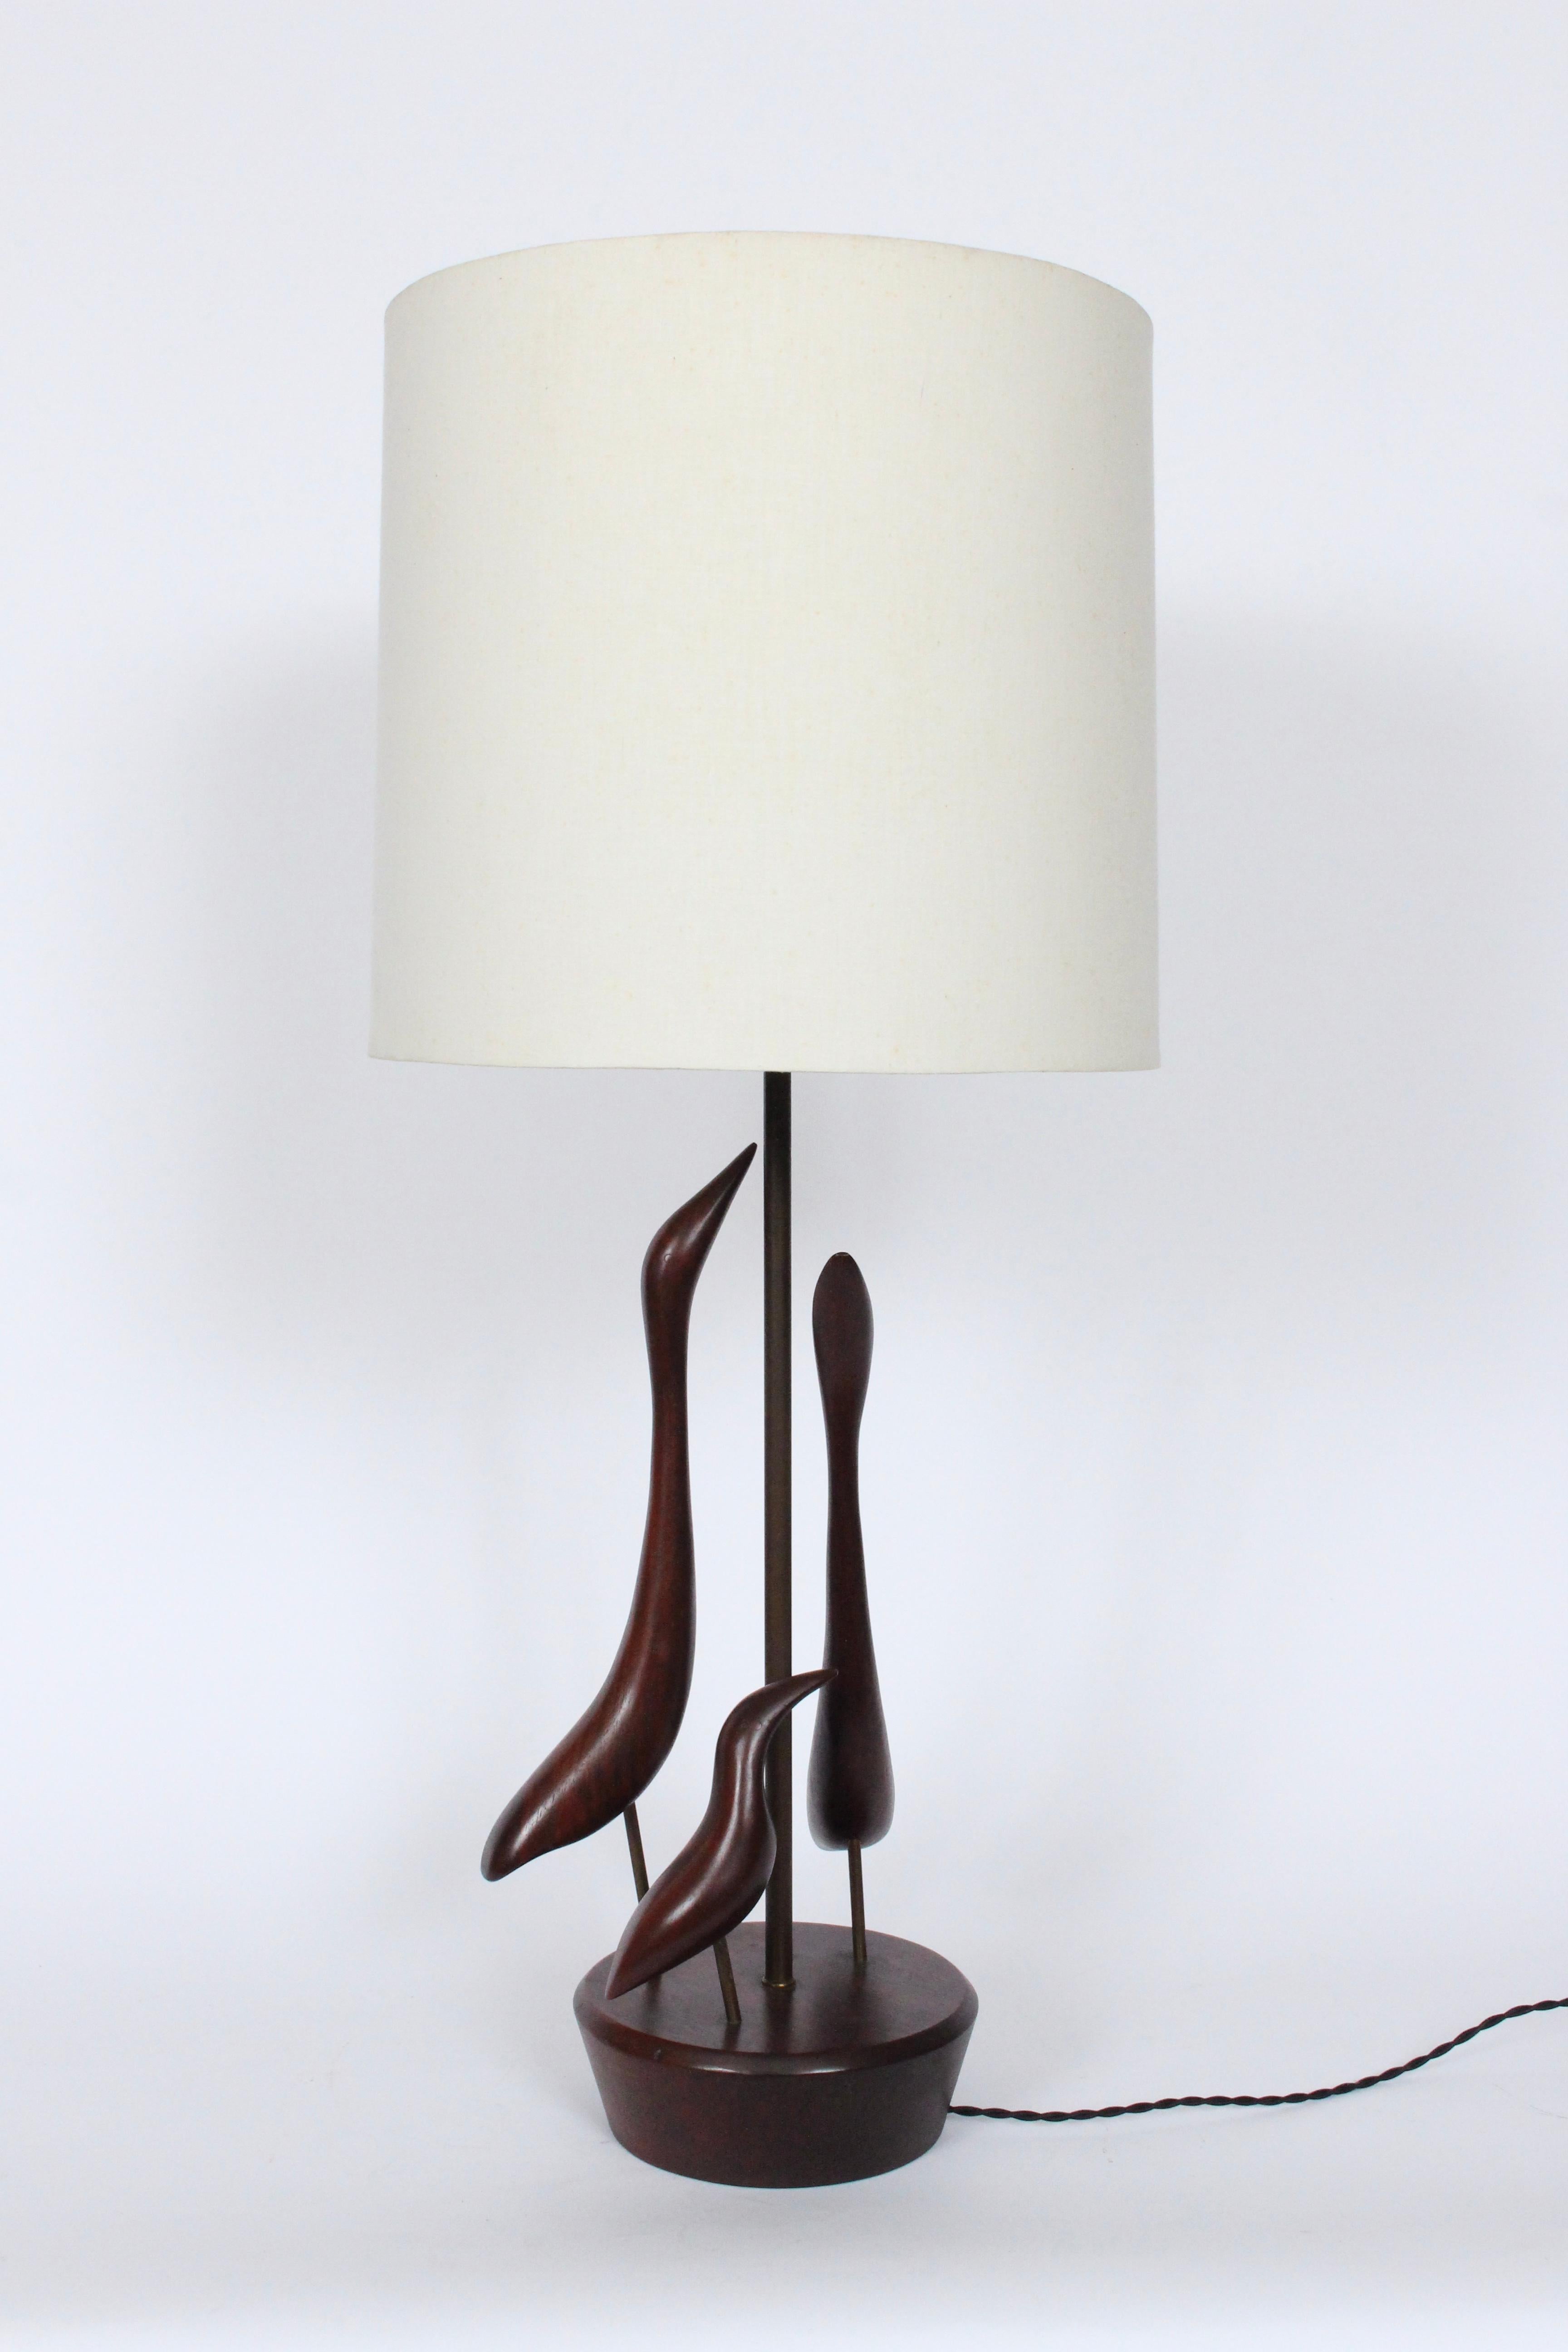 Importante lampe de table abstraite en noyer massif, réalisée à la main par Val Robbins et représentant des oiseaux de rivage. circa 1960. Trois oiseaux en noyer massif foncé, sculptés à la main, avec finition d'origine, sur une base ronde évasée en